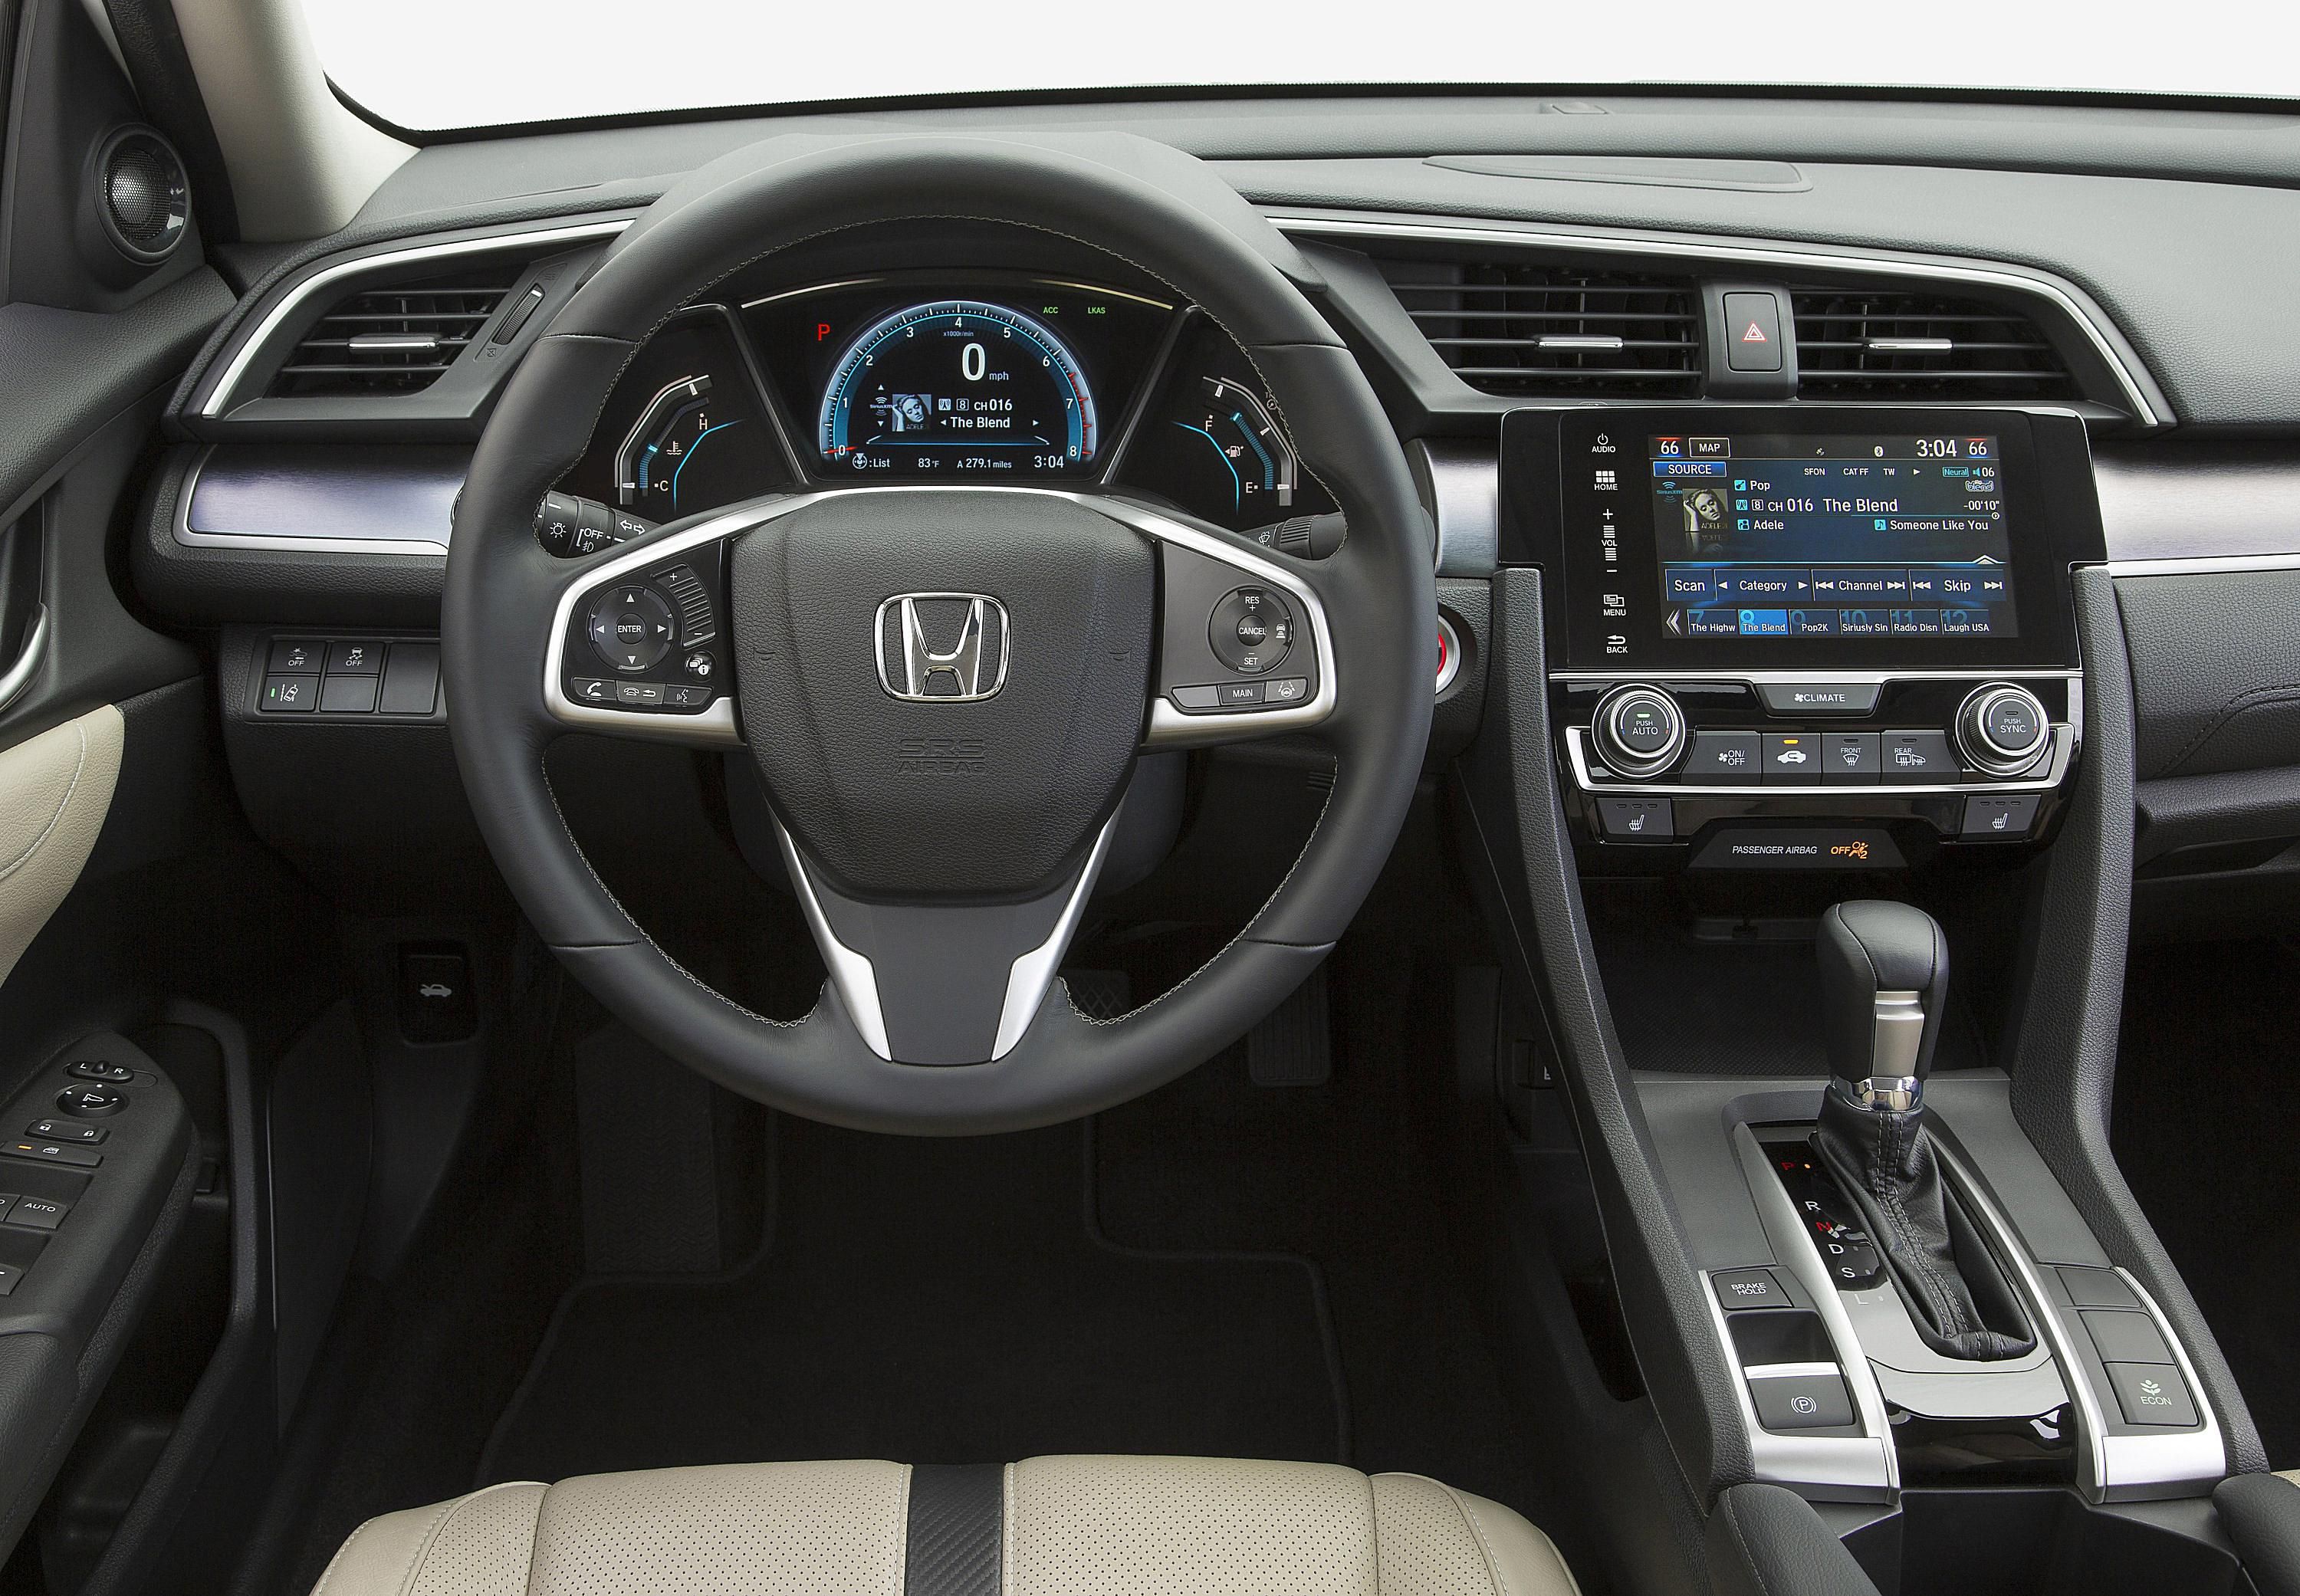 Honda Civic 4D sedan model